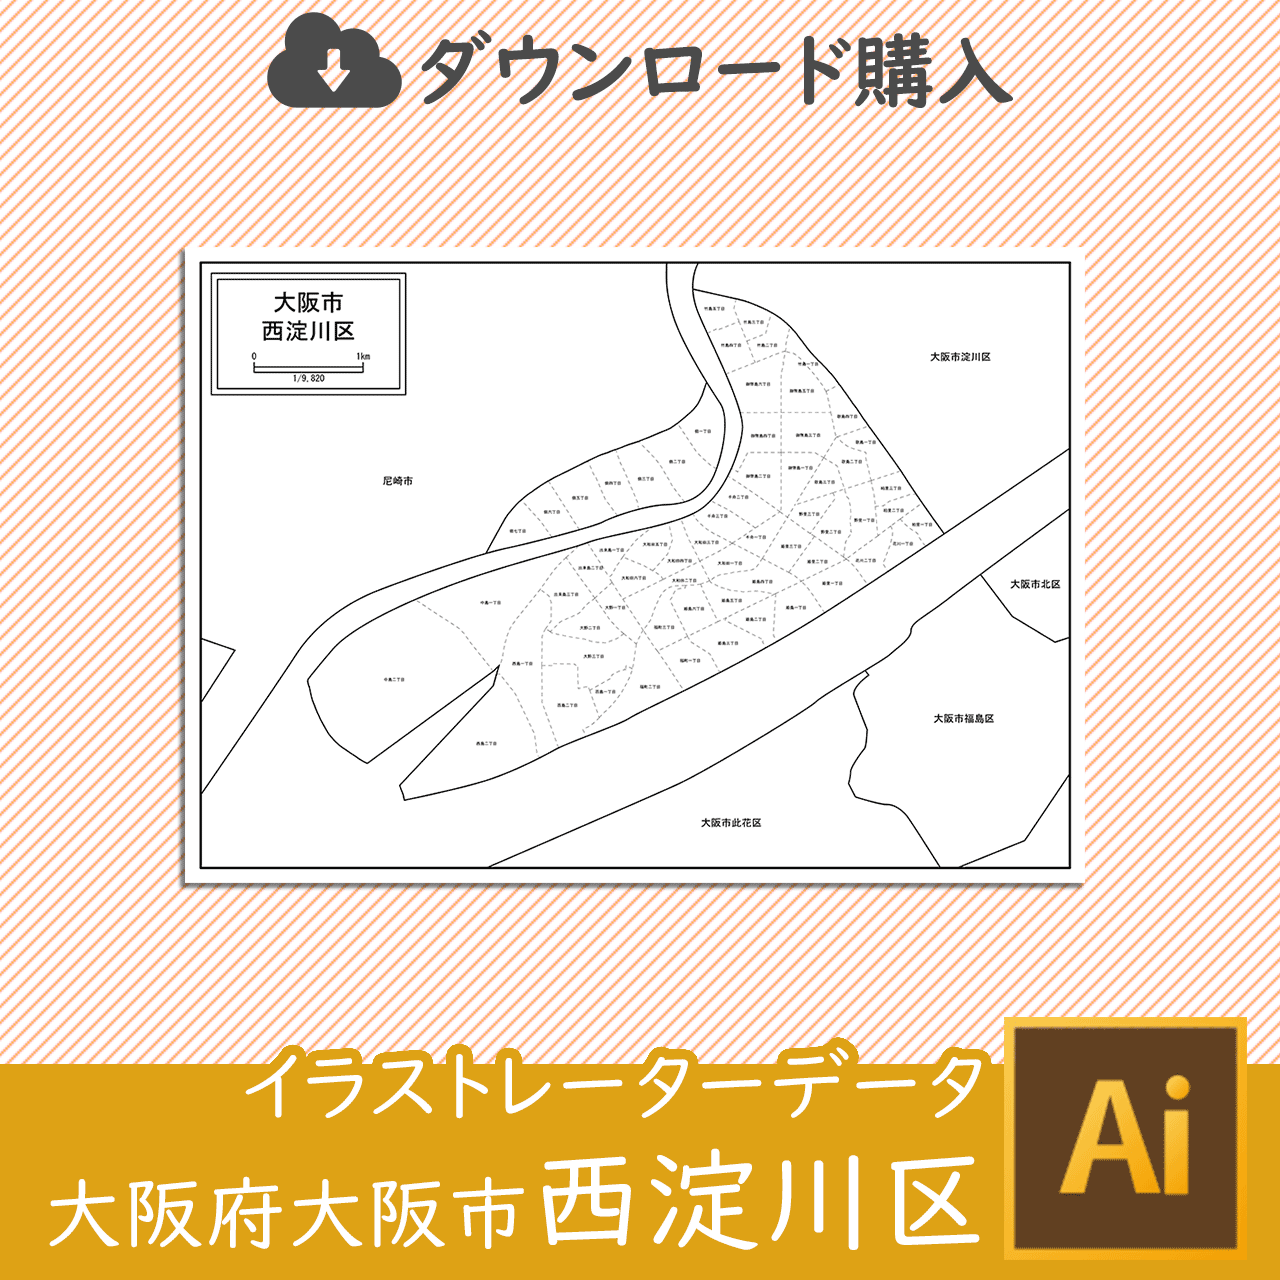 大阪市西淀川区のaiデータのサムネイル画像